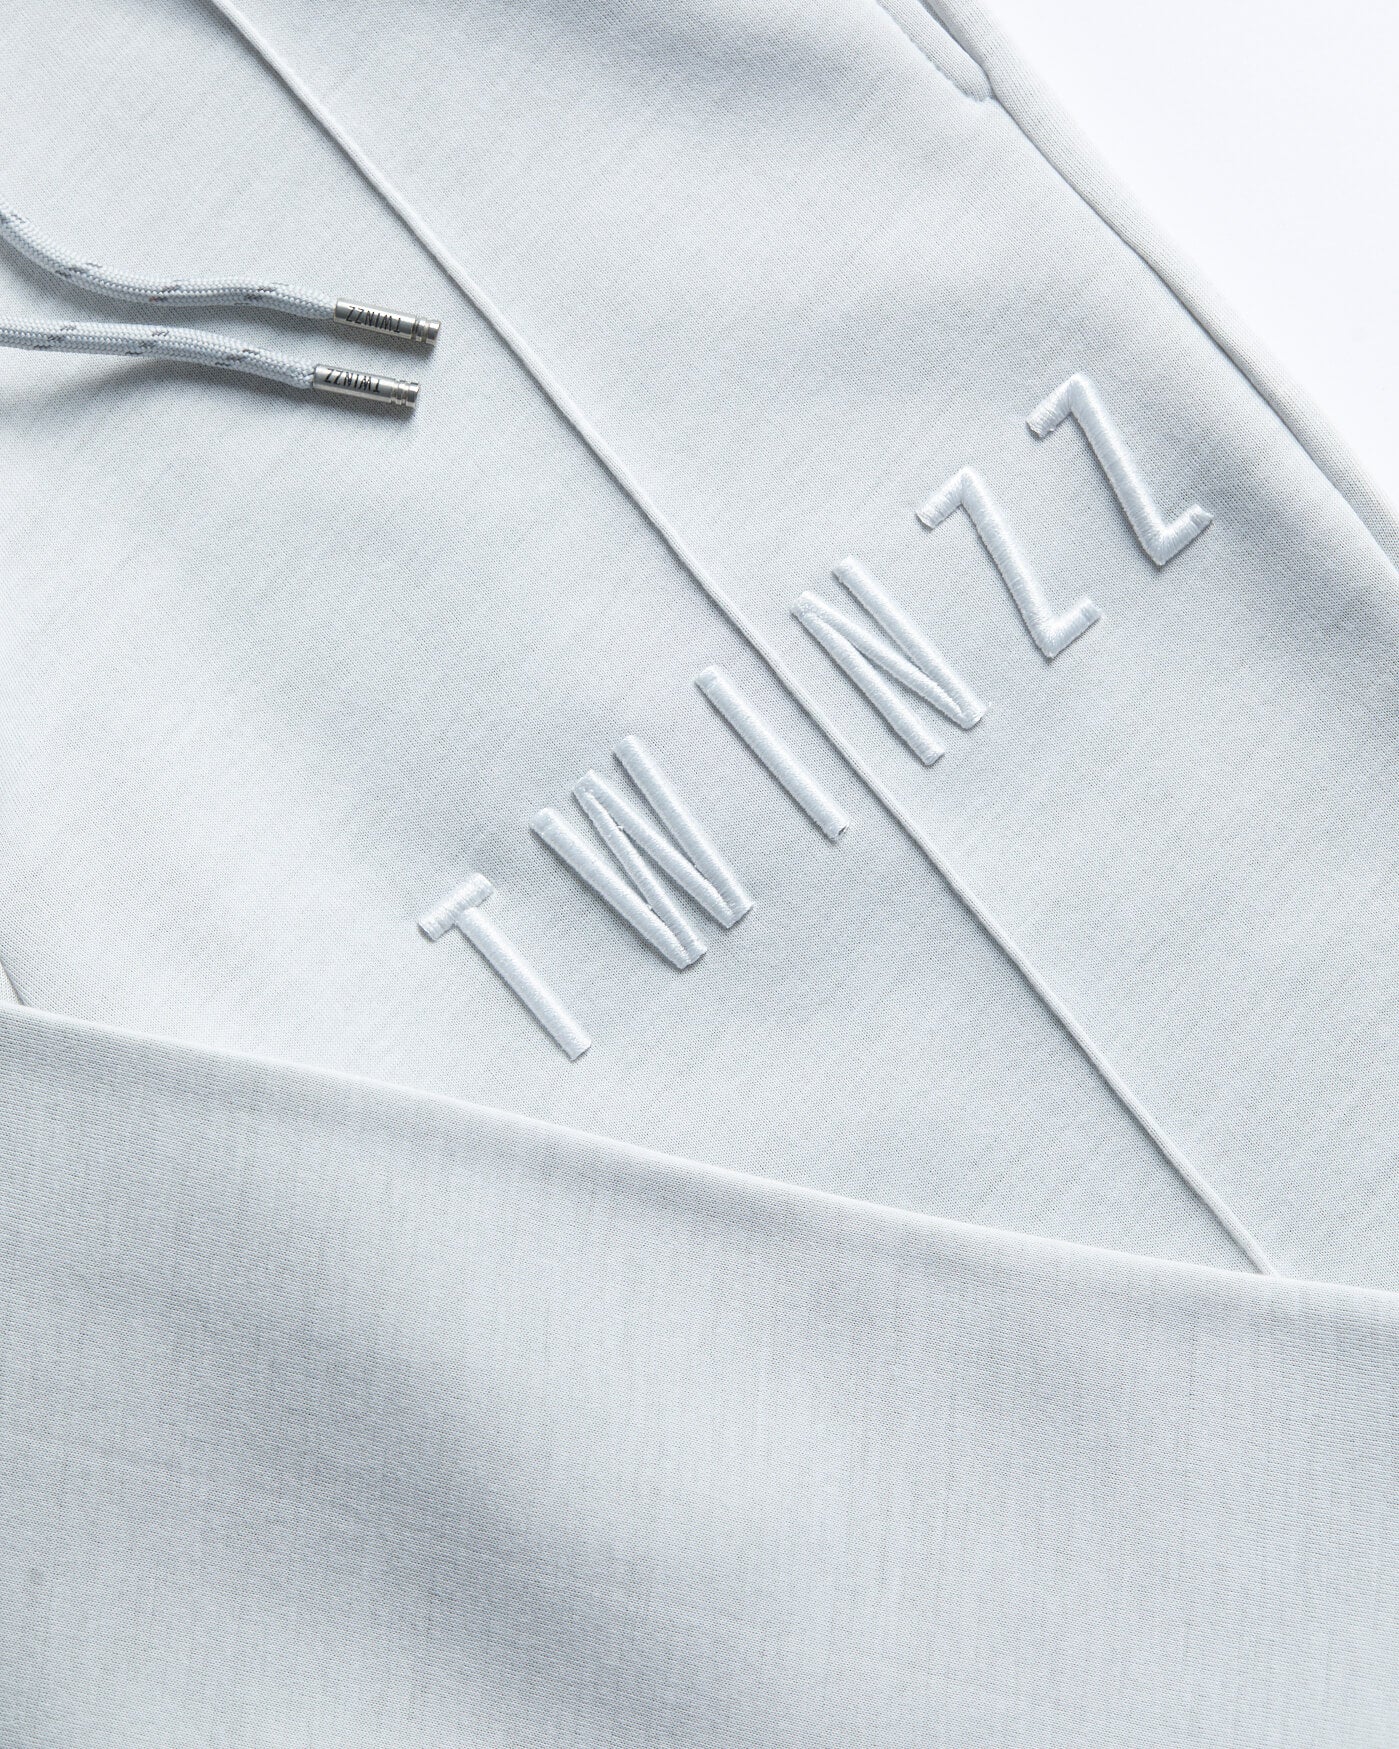 Twinzz grey joggers logo